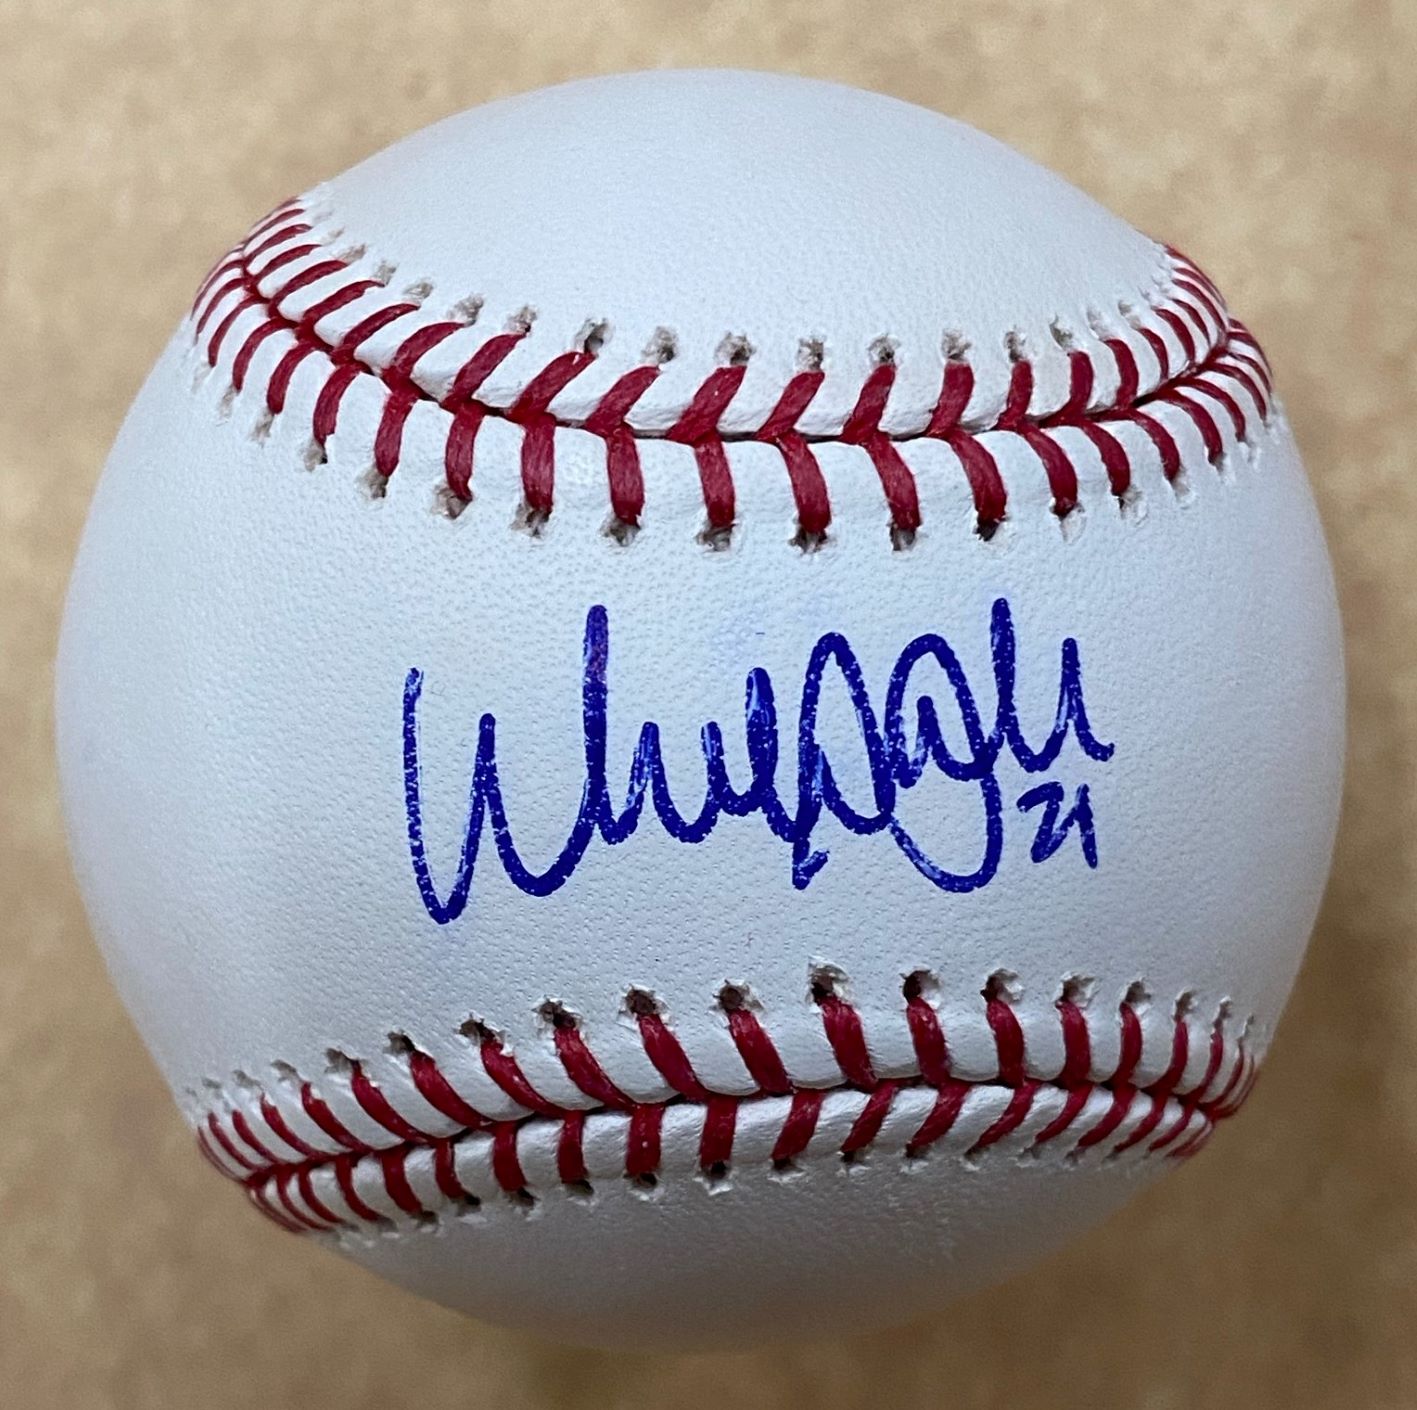 At Auction: LA Dodgers Walker Buehler Autographed Jersey